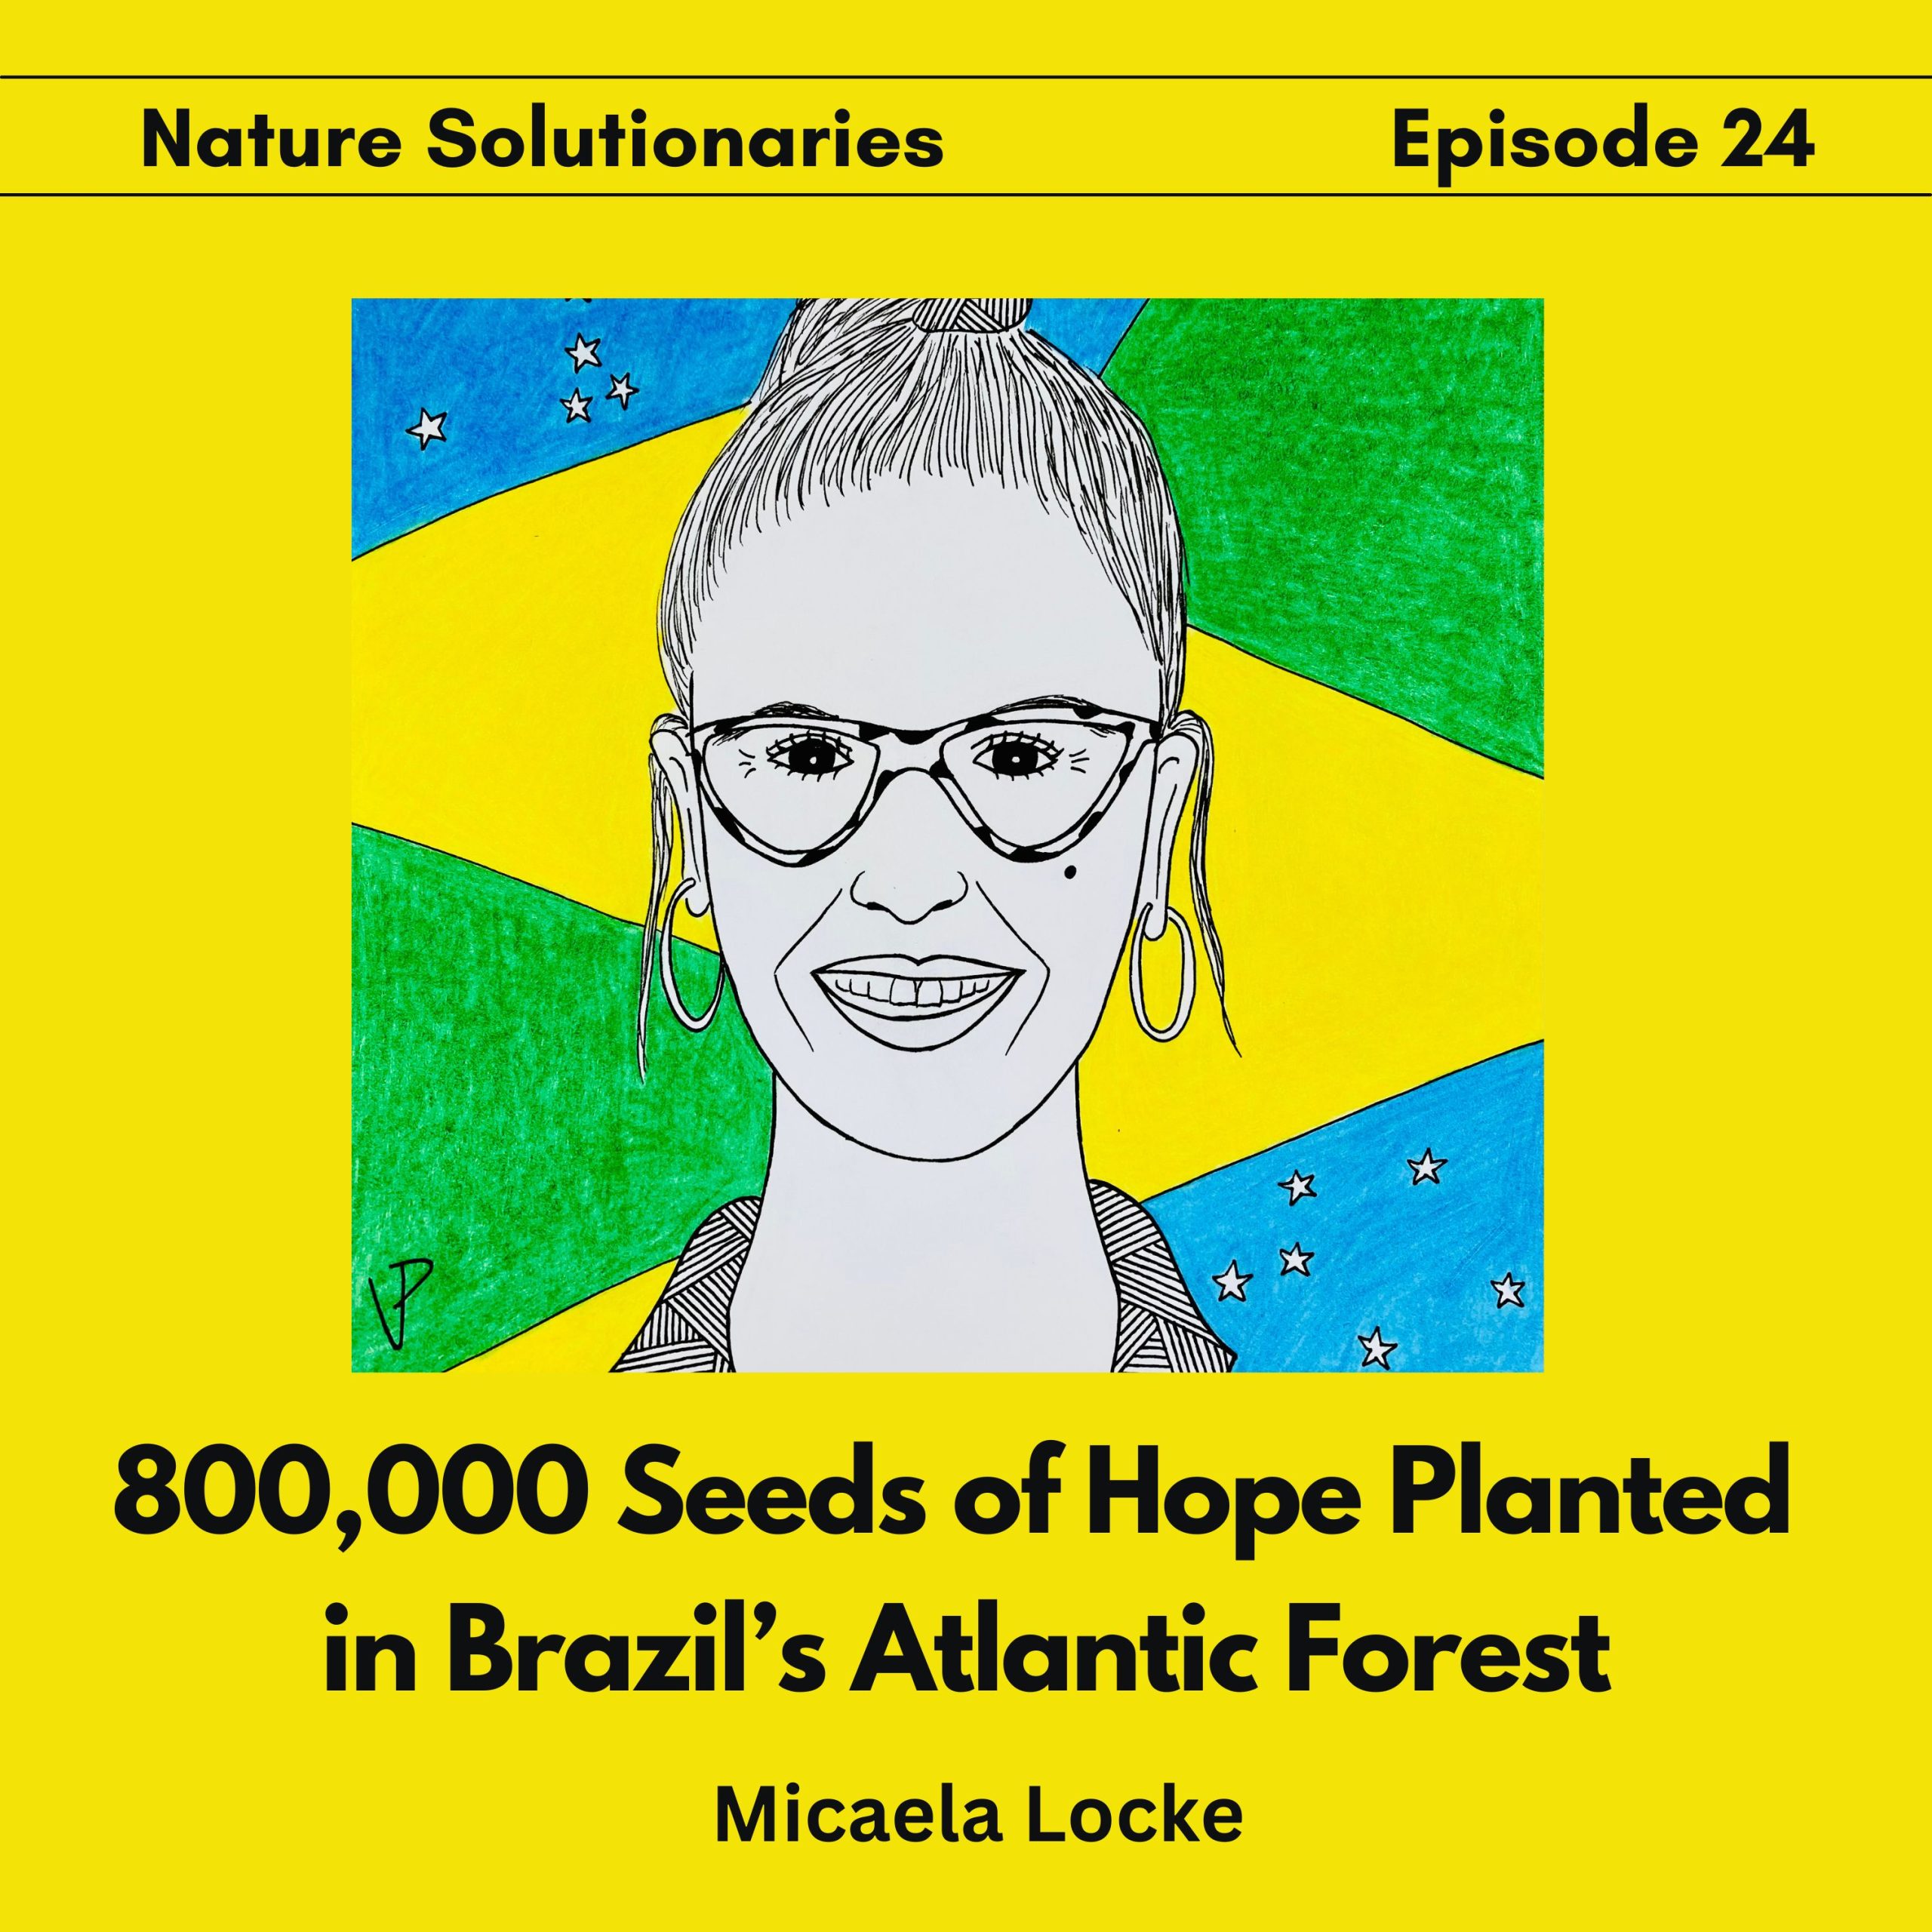 Micaela Locke on Nature Solutionaries